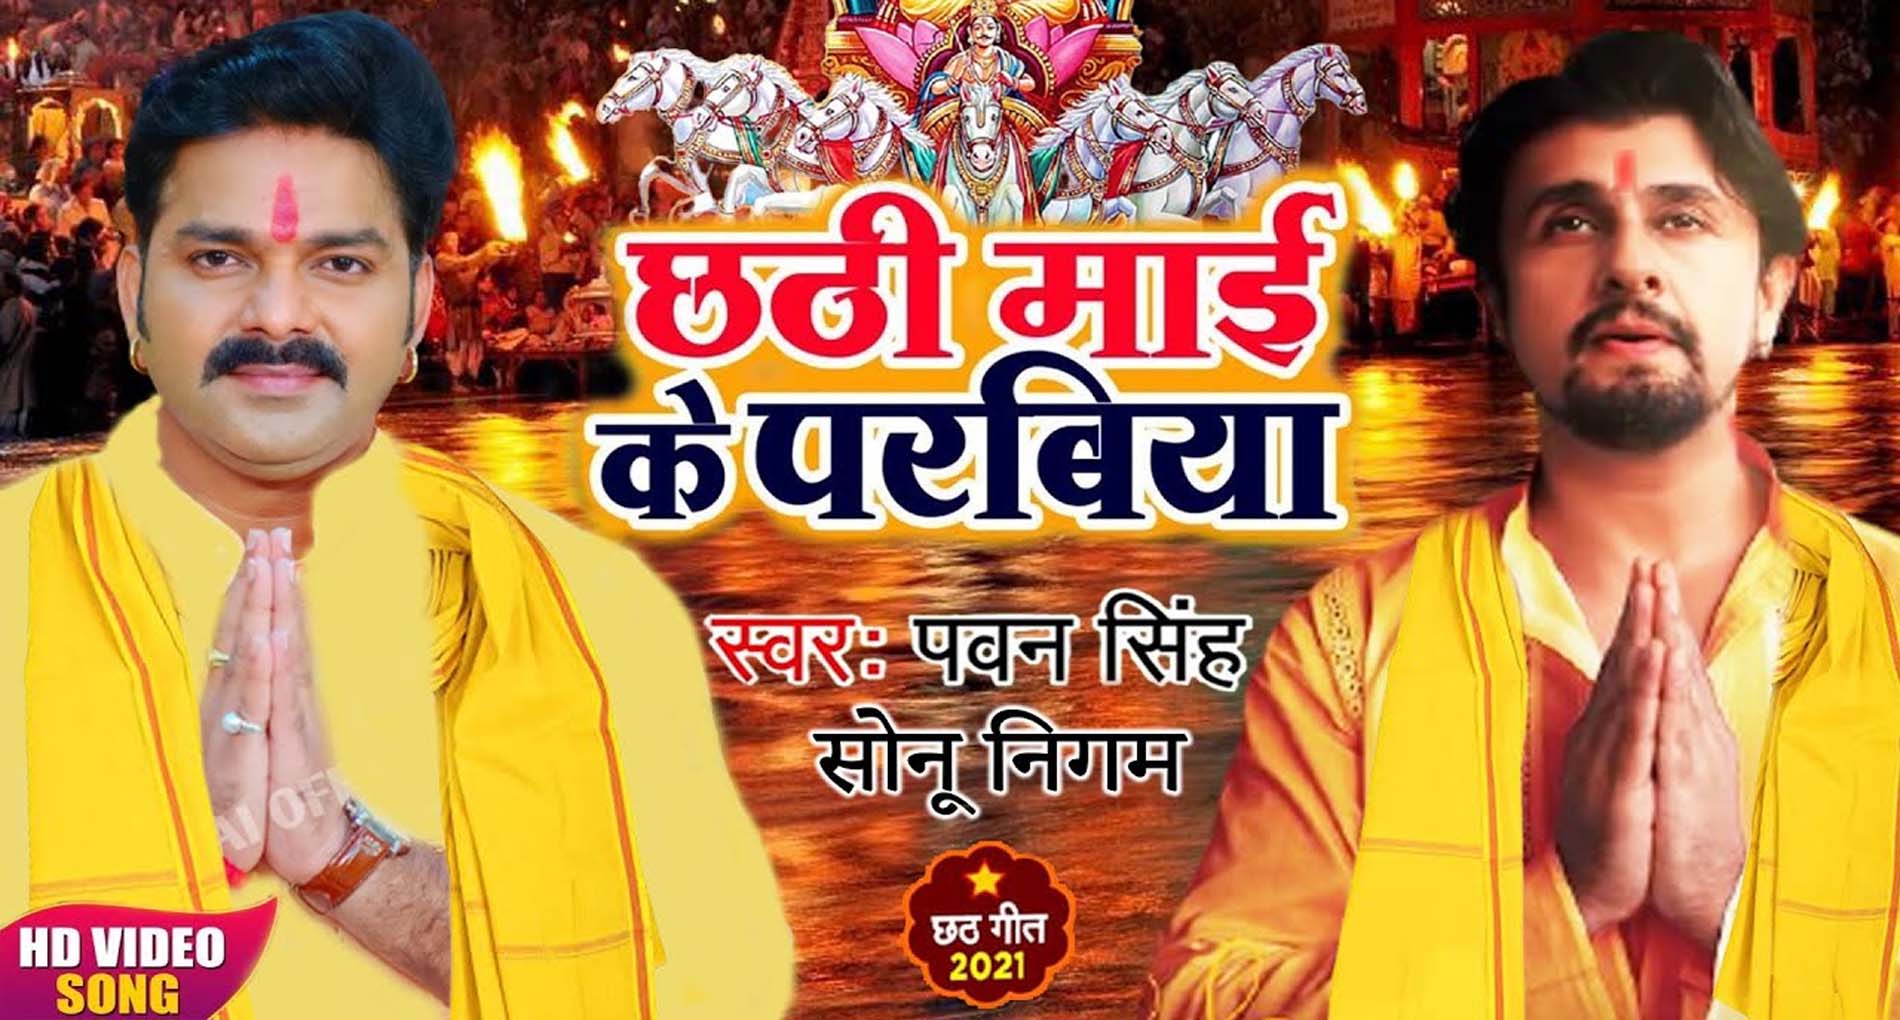 Bhojpuri Chhath Geet: पवन सिंह और सोनू निगम के नए छठ गीत की धूम! रिलीज के साथ ही छाया